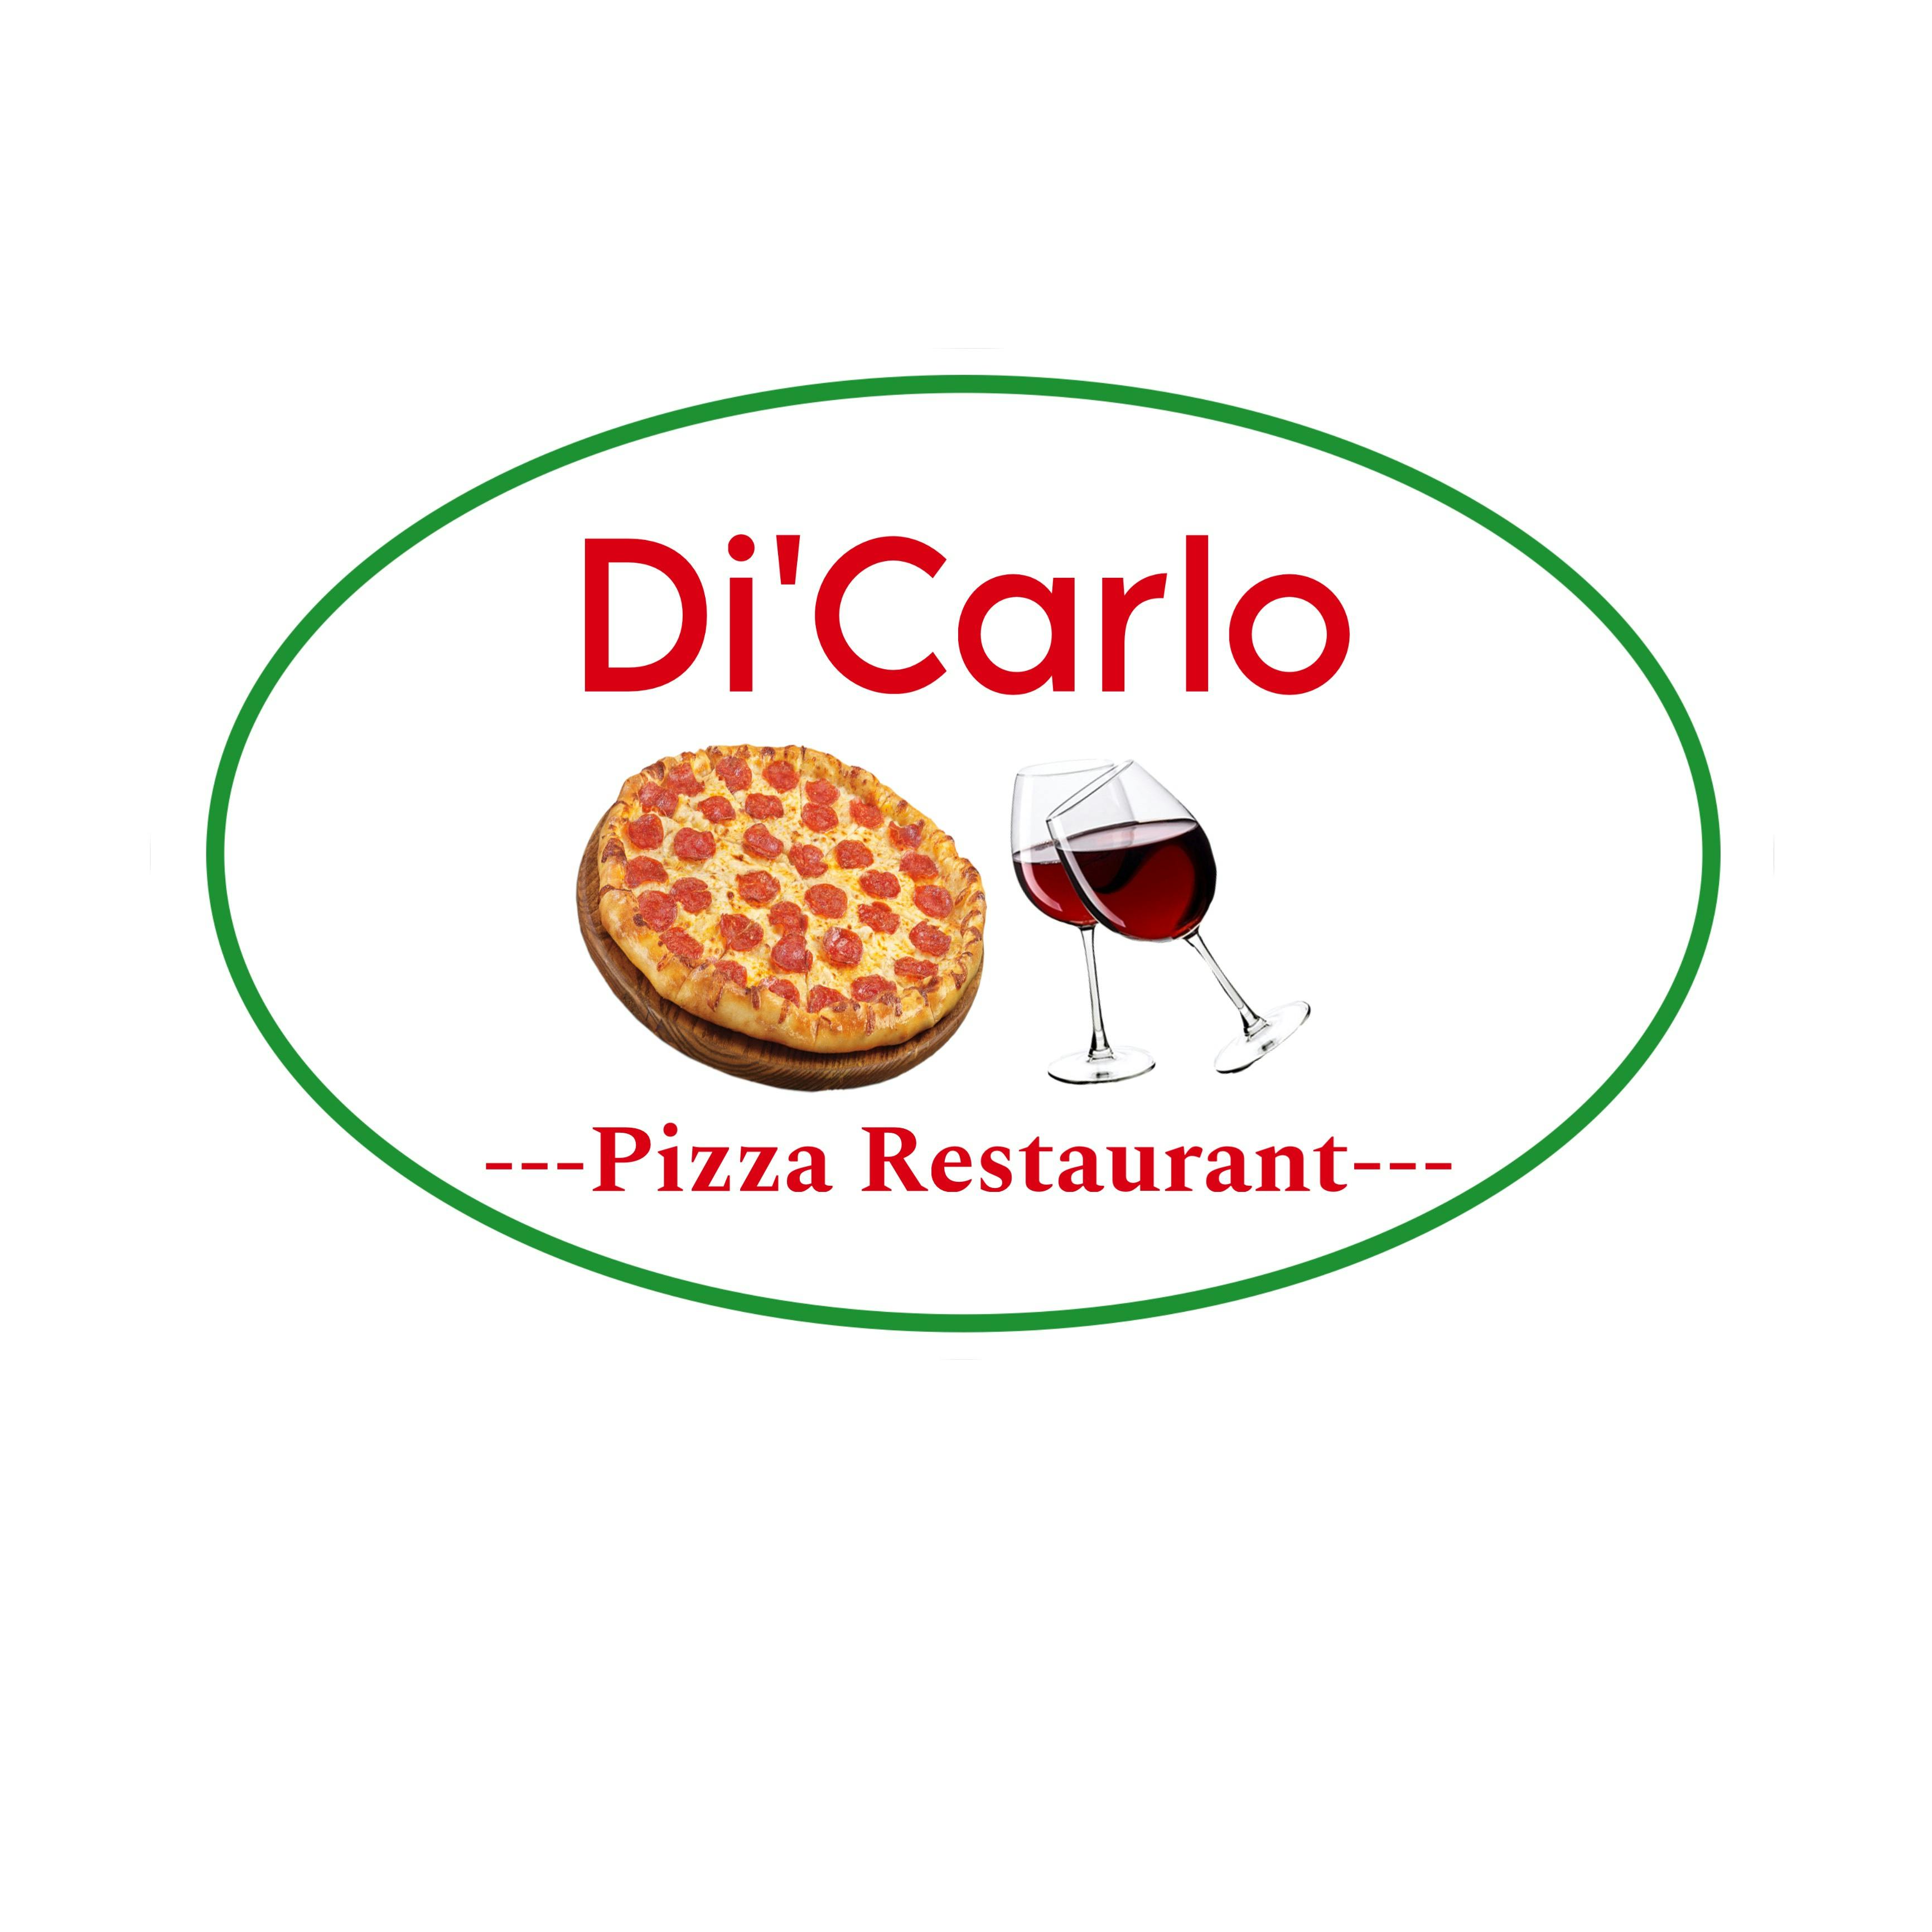 Di Carlos Italian Restaurant Pizza